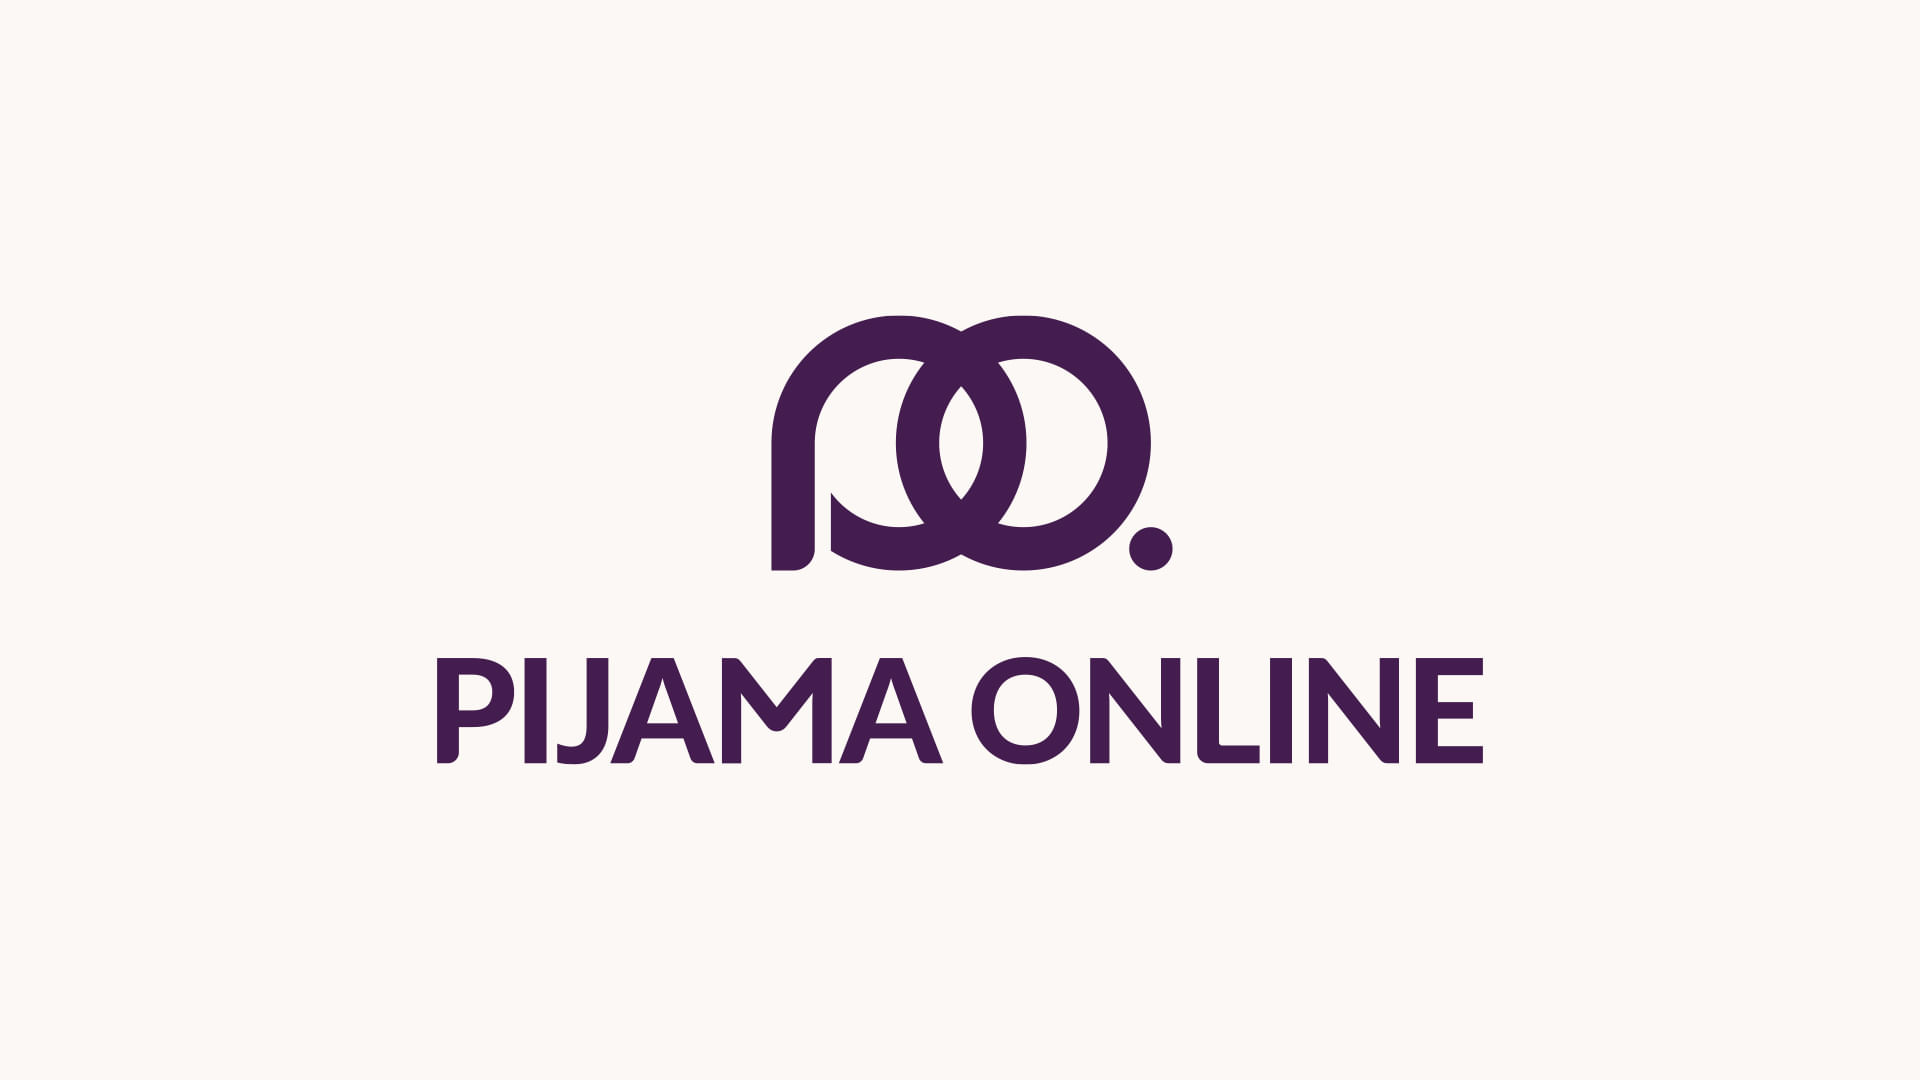 (c) Pijamaonline.com.br